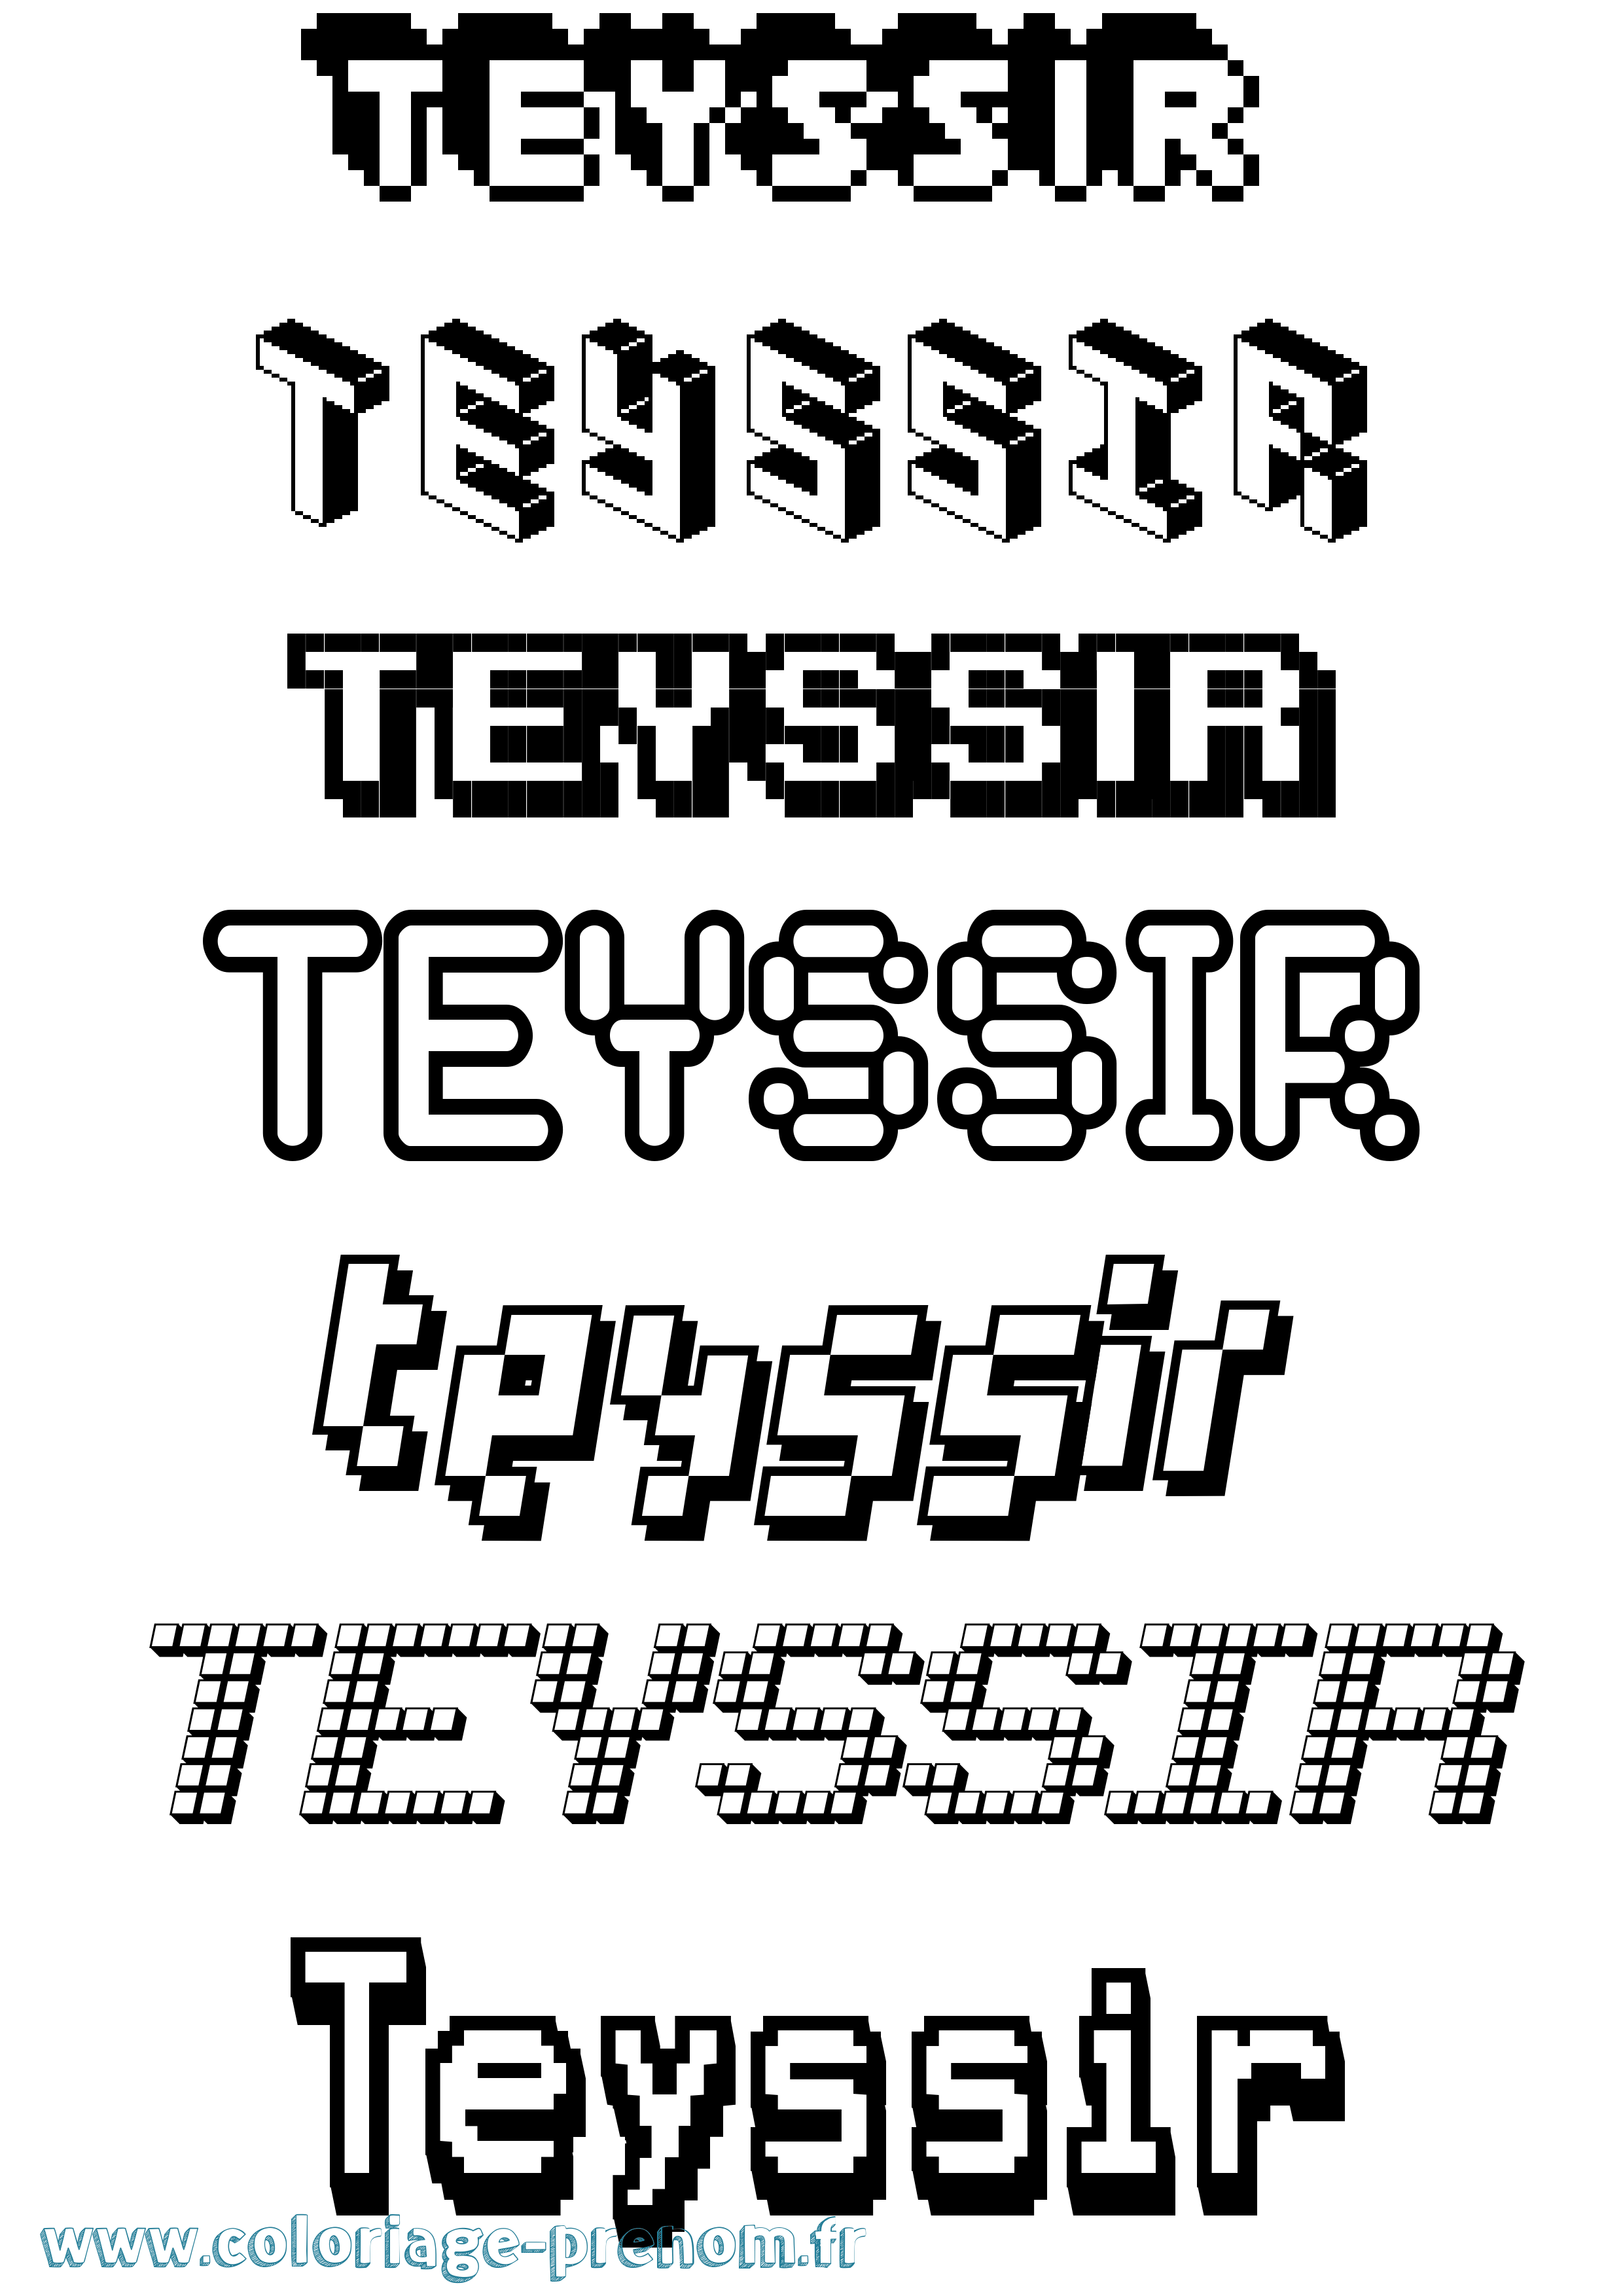 Coloriage prénom Teyssir Pixel